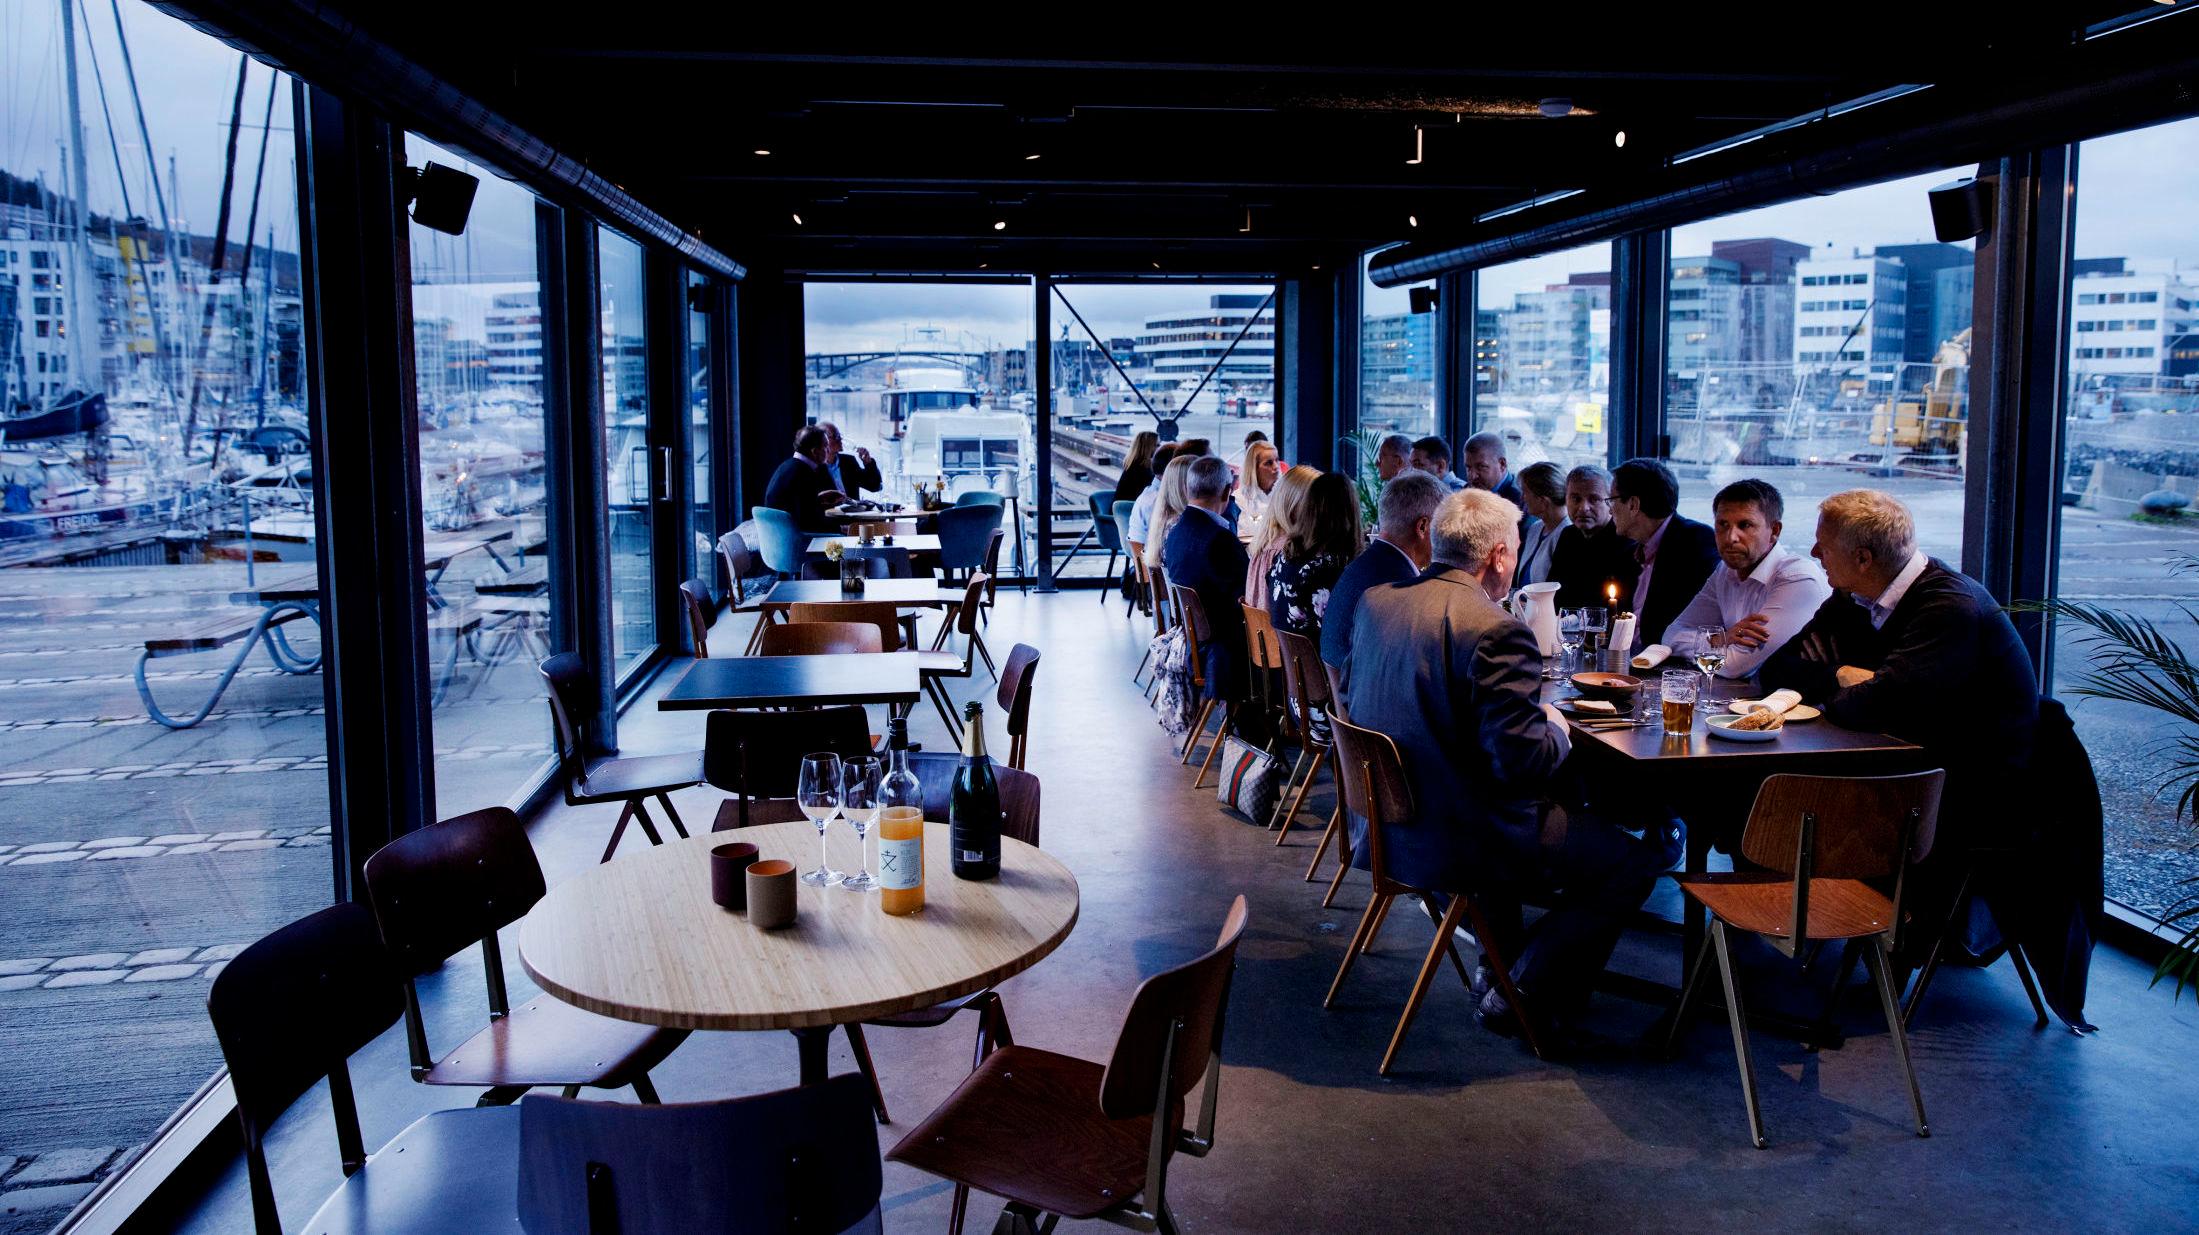 – Ditt neste restaurantbesøk i Bergen bør være her